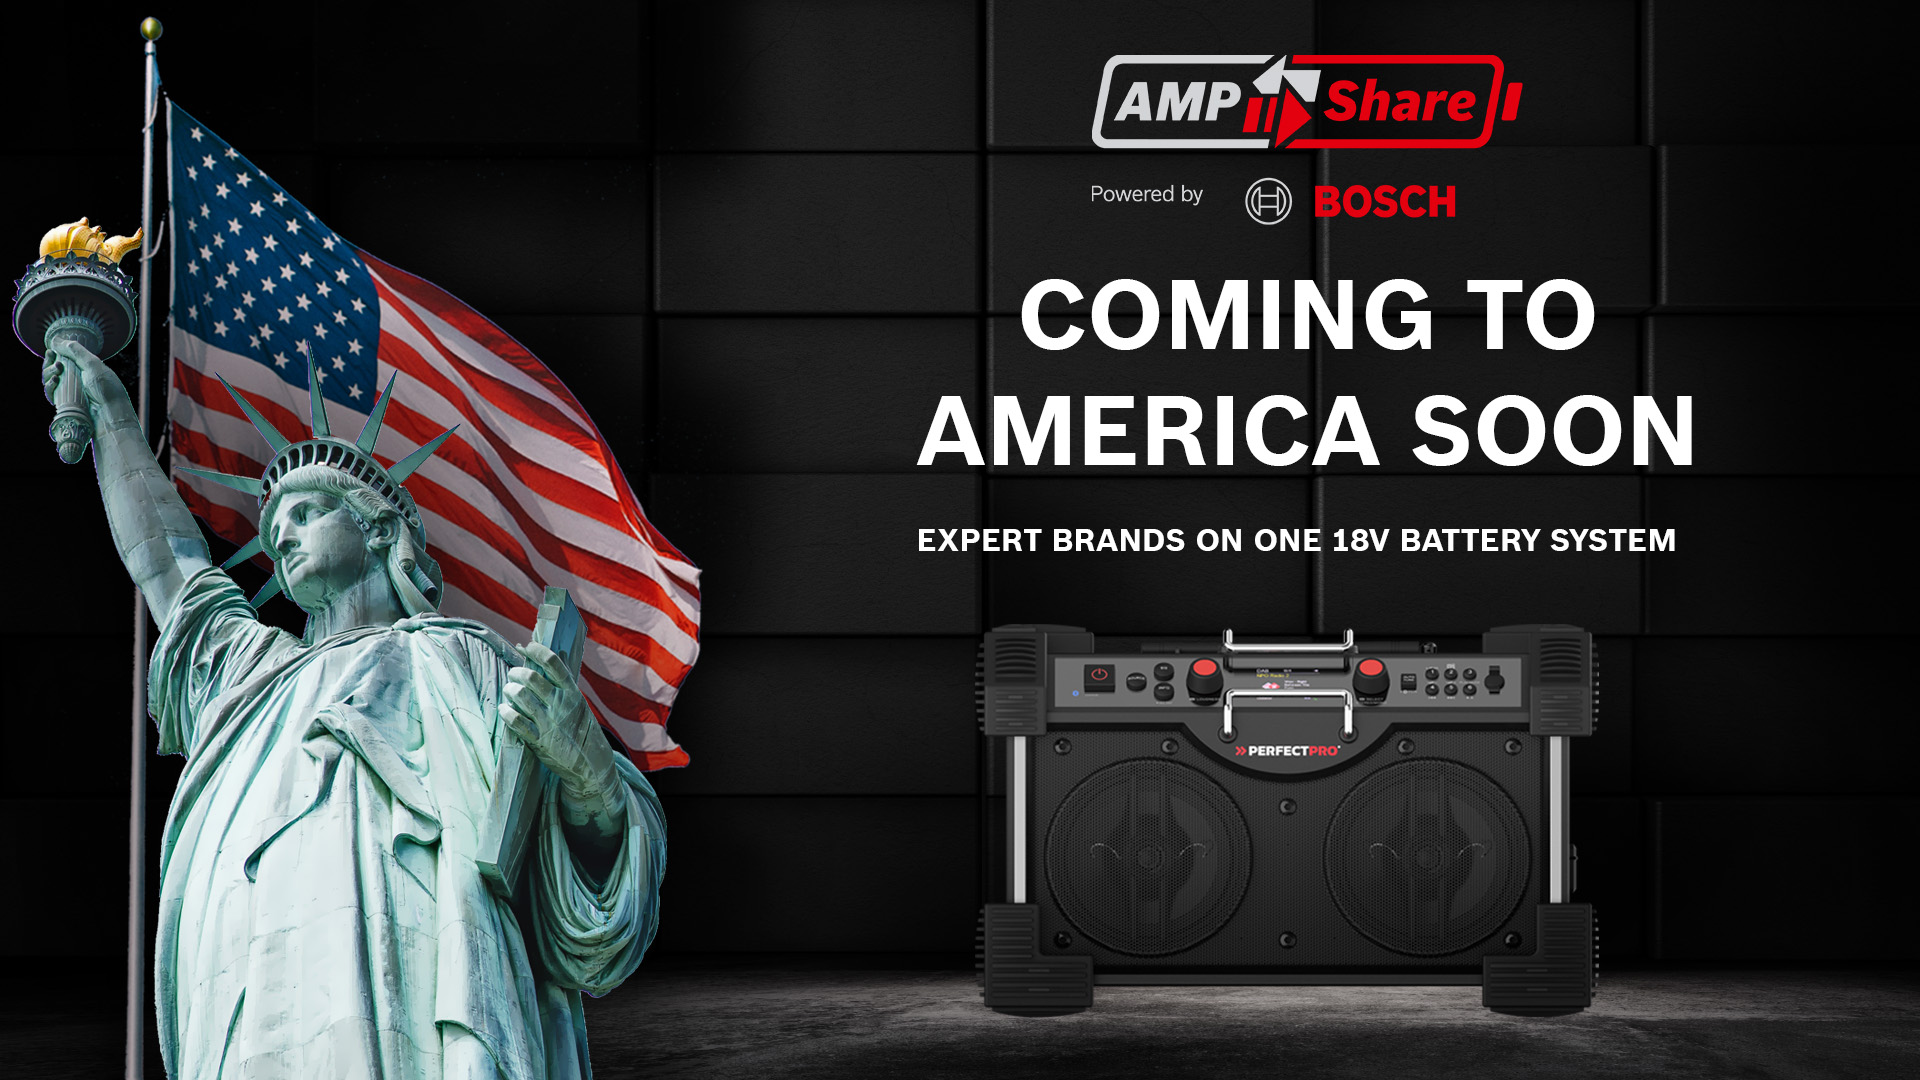 AMPShare – Powered by Bosch startet in den USA und Kanada